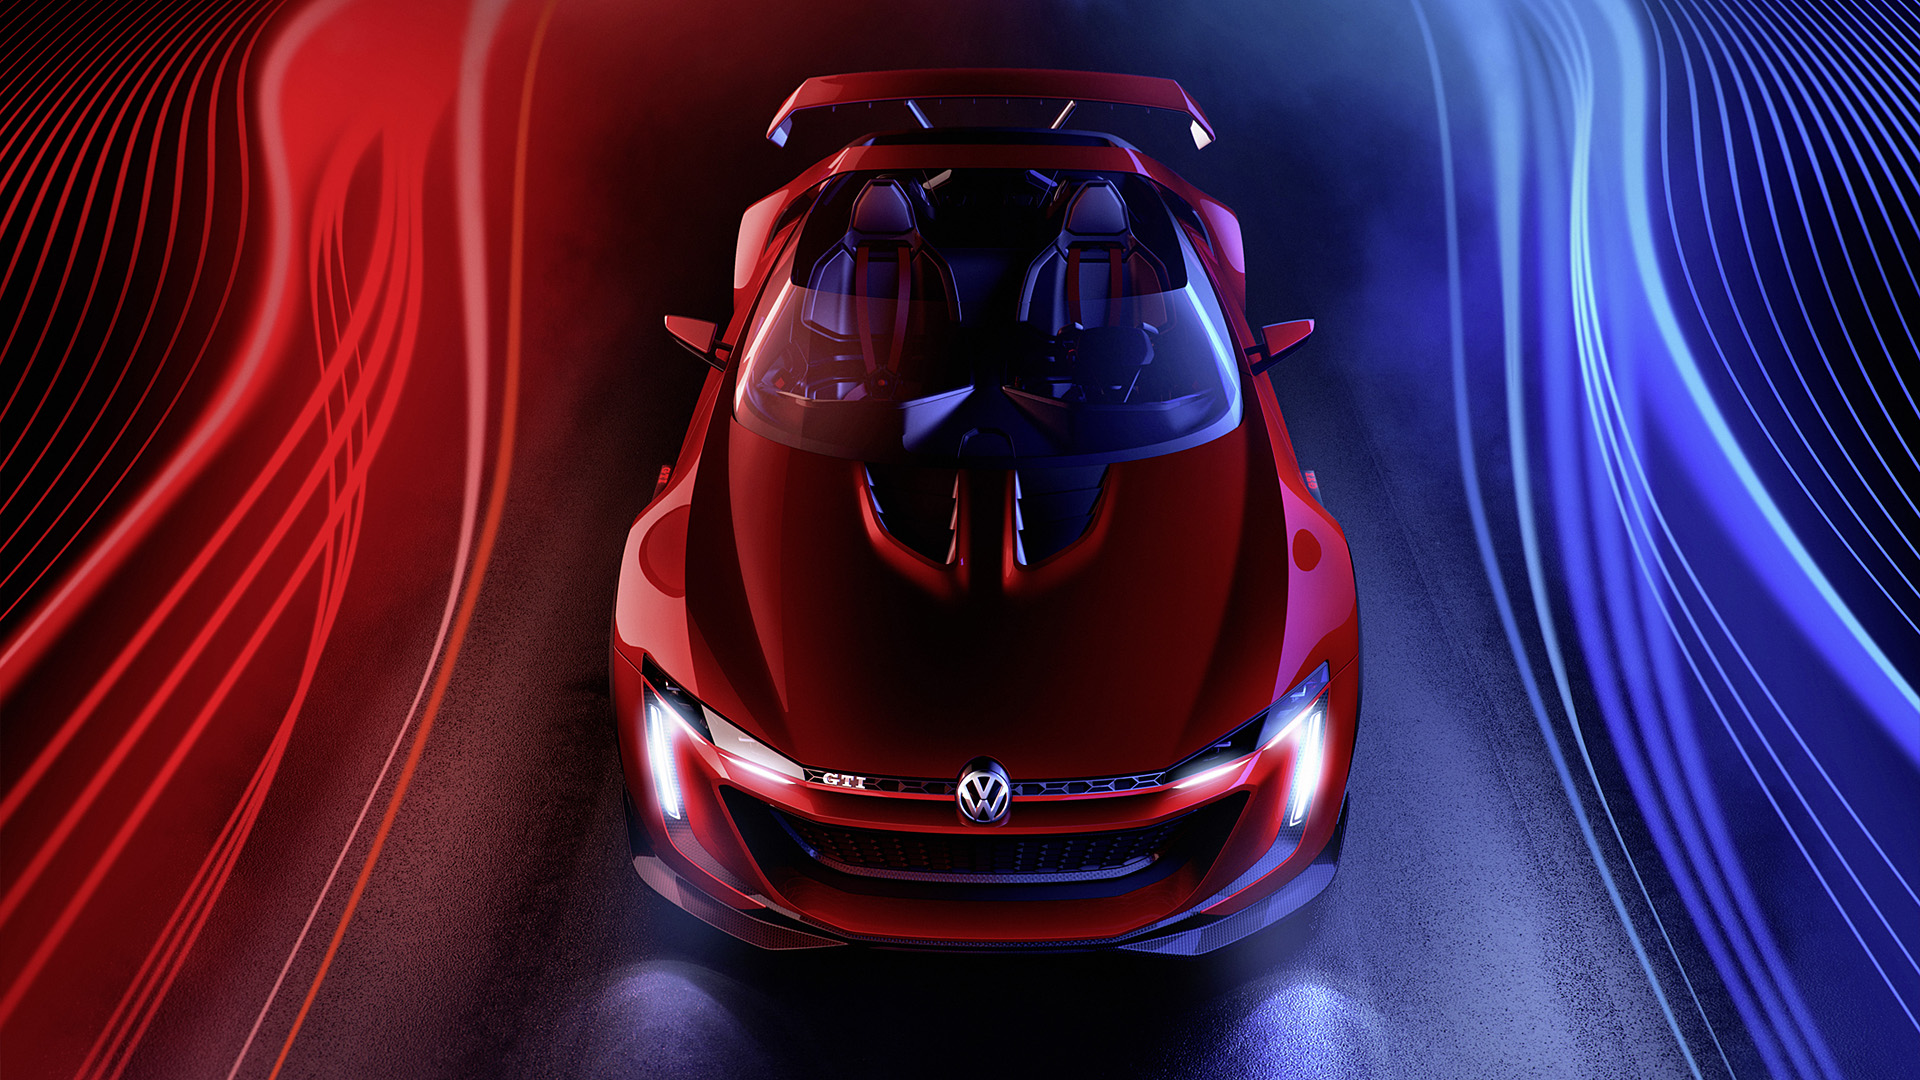  2014 Volkswagen GTI Roadster Concept Wallpaper.